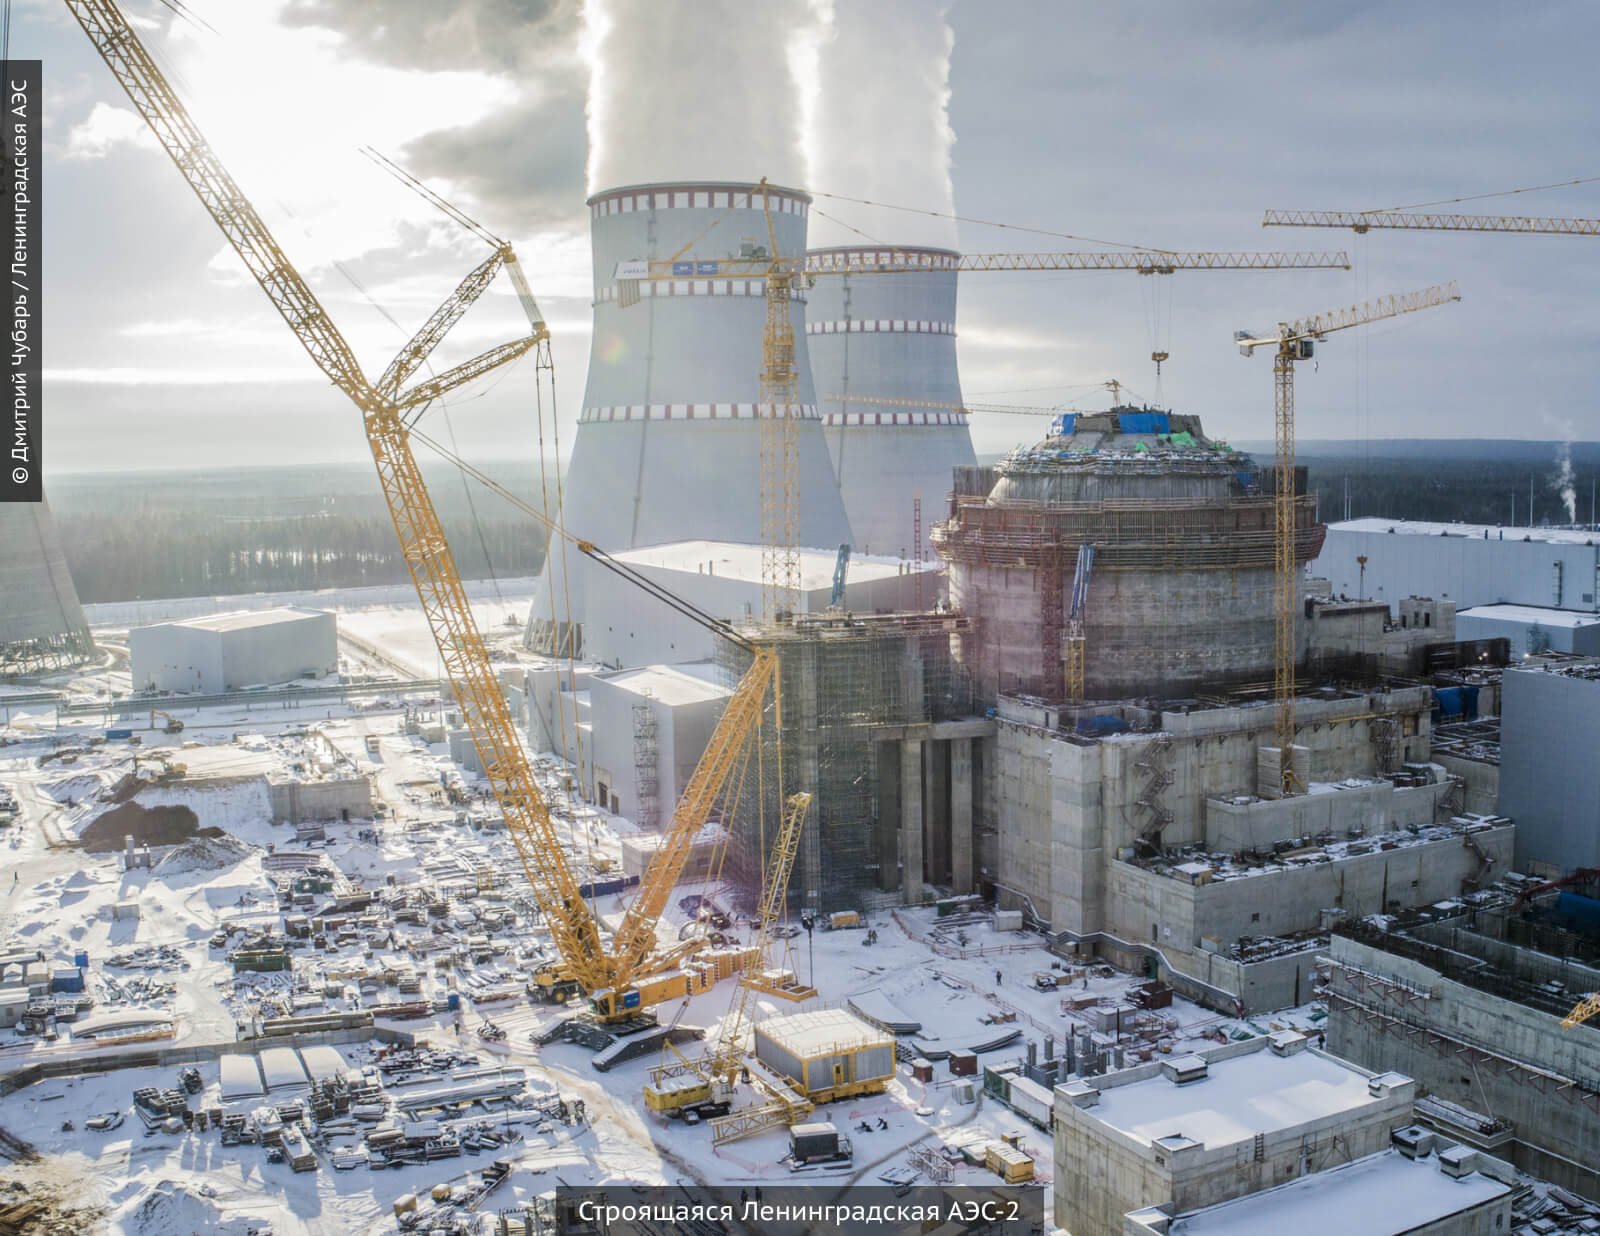 Строящаяся Ленинградская АЭС-2